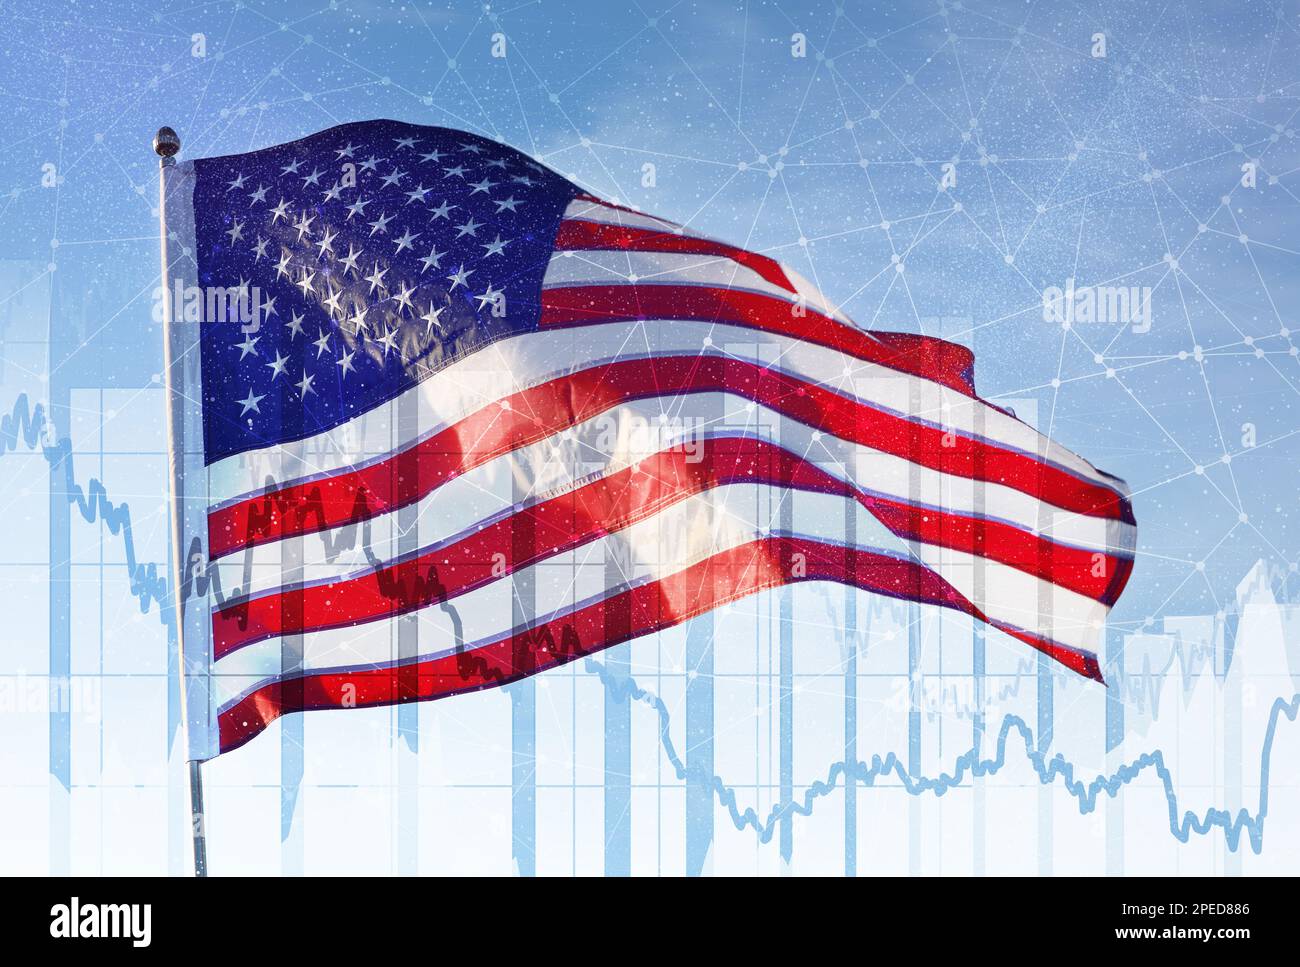 Exposición múltiple de bandera americana, gráficos y líneas de conexión. Economía ESTADOUNIDENSE Foto de stock